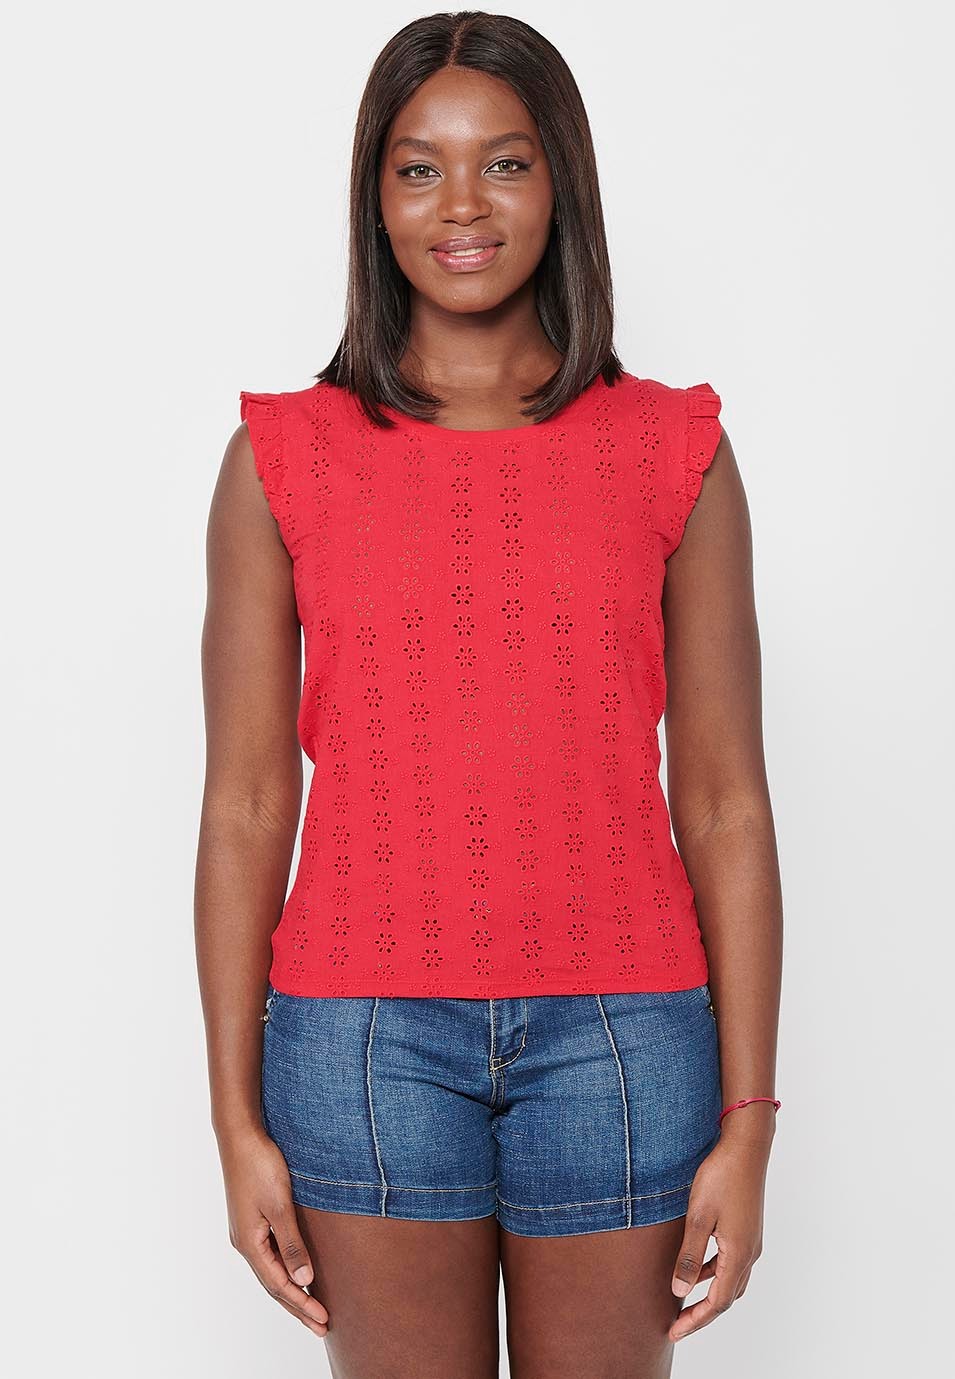 Camiseta de manga corta, volante en los hombros, color rojo para mujer